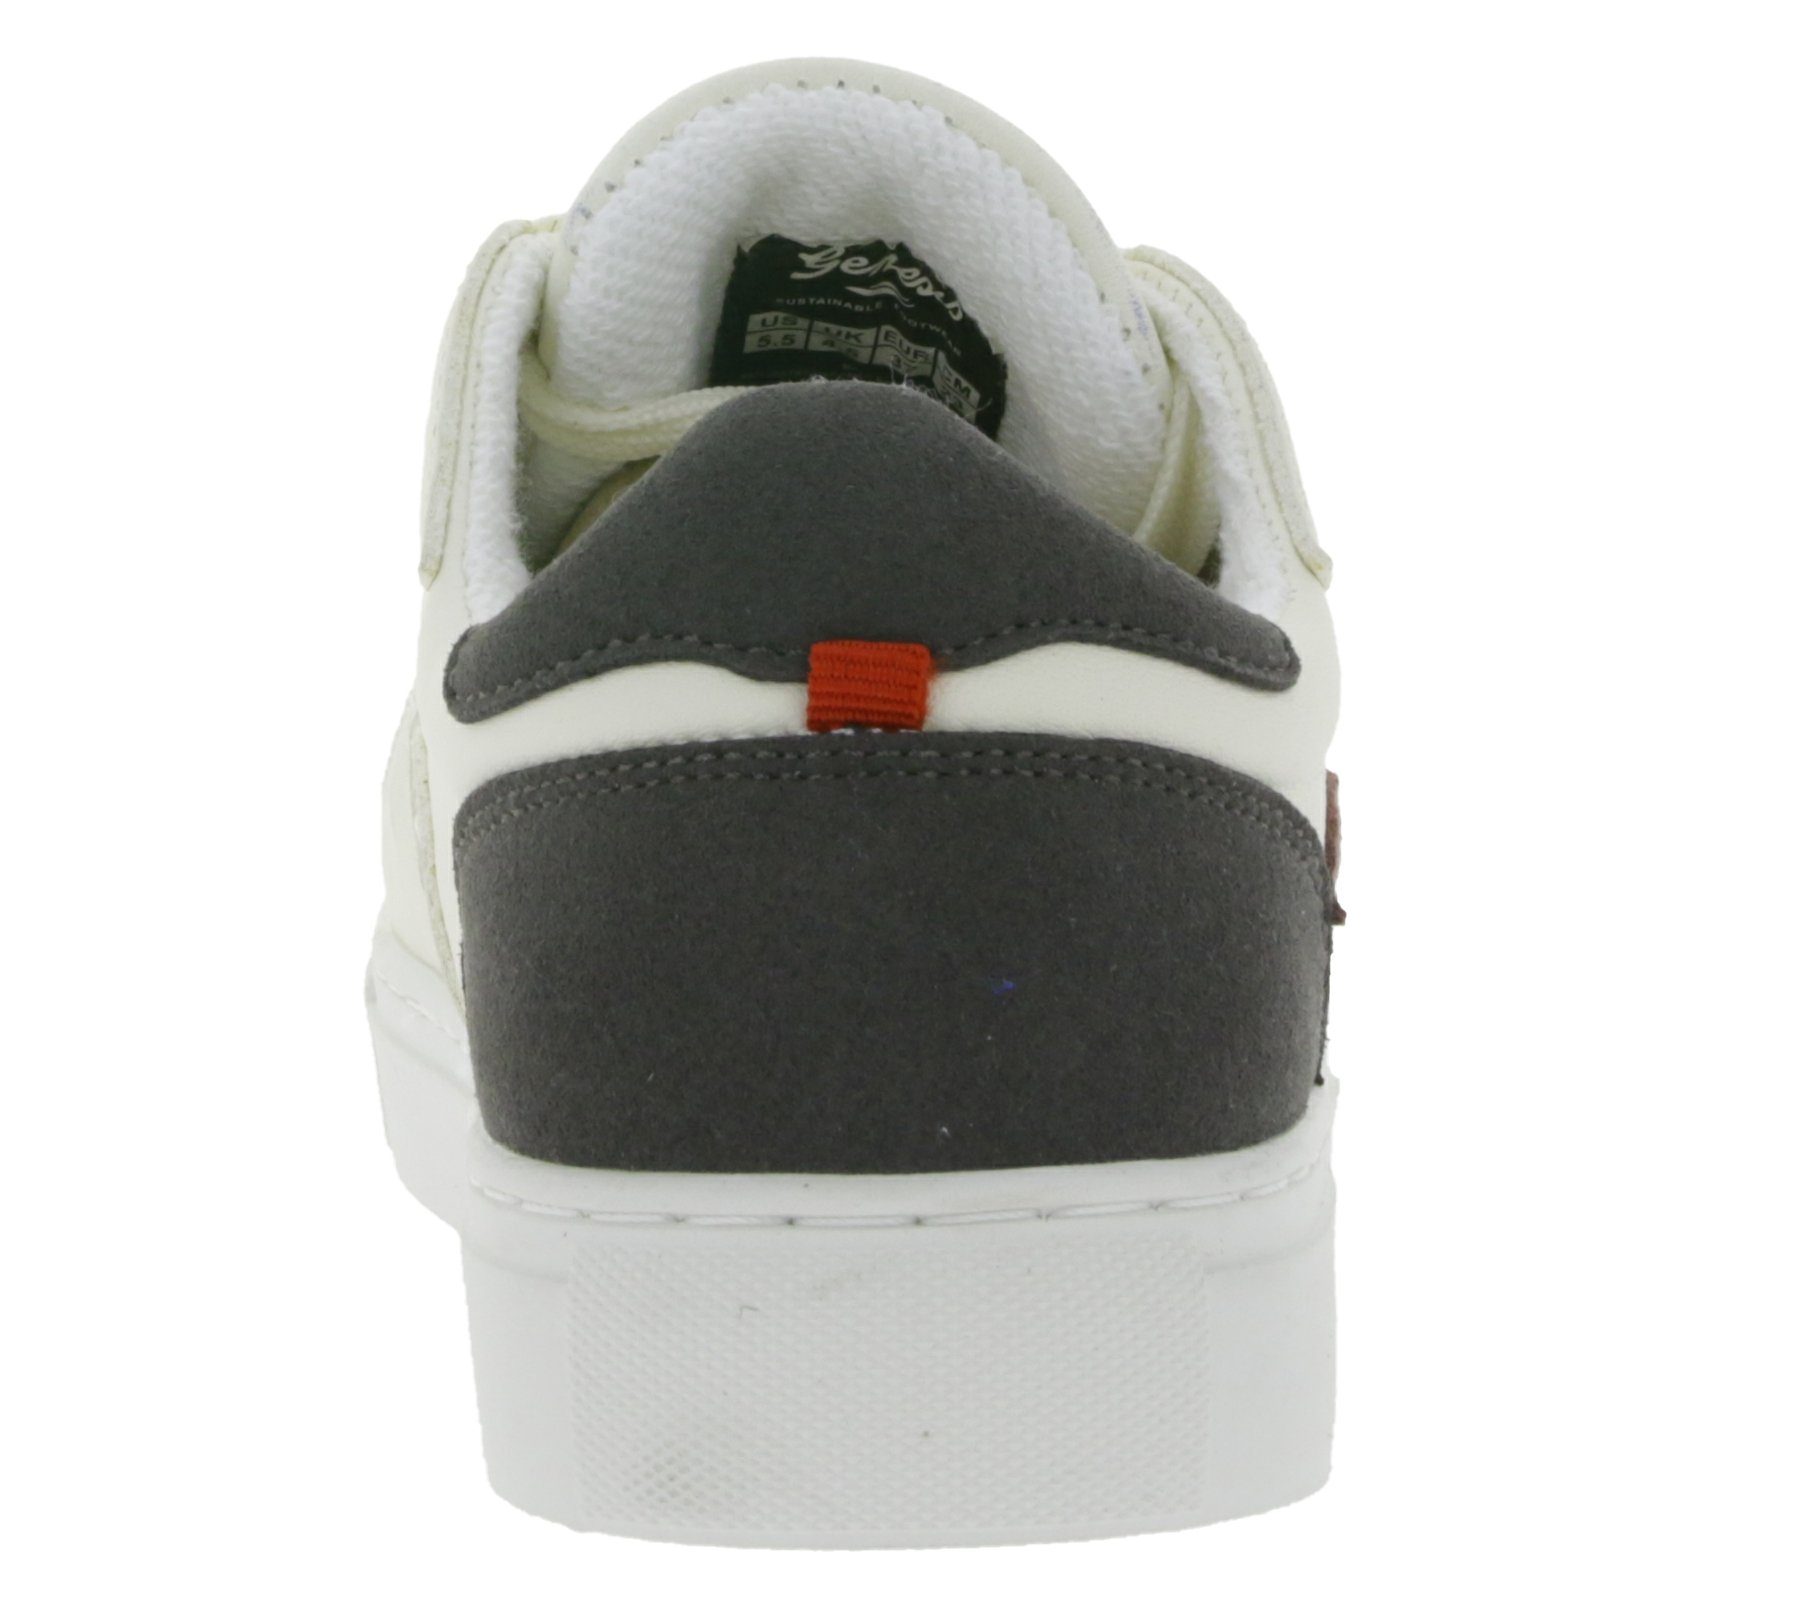 GENESIS Genesis G-Soley Damen Skater-Schuhe Weiß/Bordeaux 1004238 Sneaker Freizeit-Schuhe Sneaker Low Top Echtleder